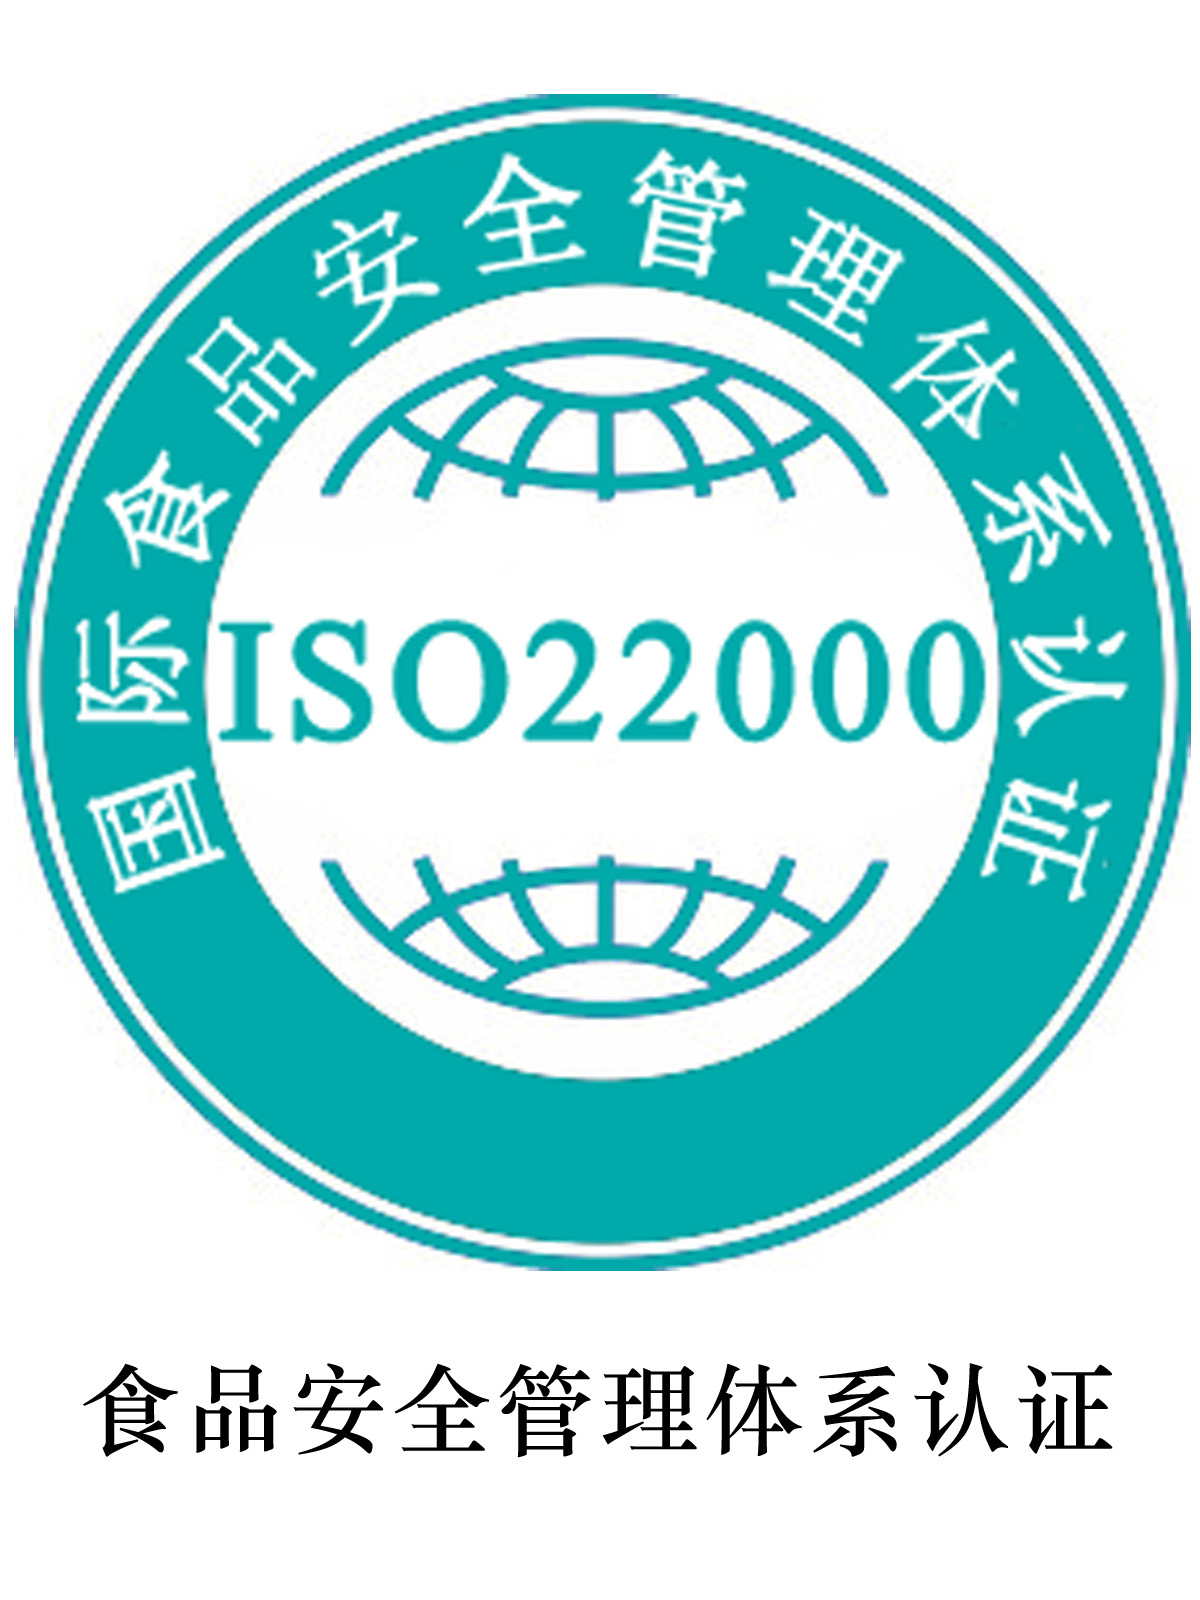 厦门ISO22000食品安全管理体系认证 需要的资料